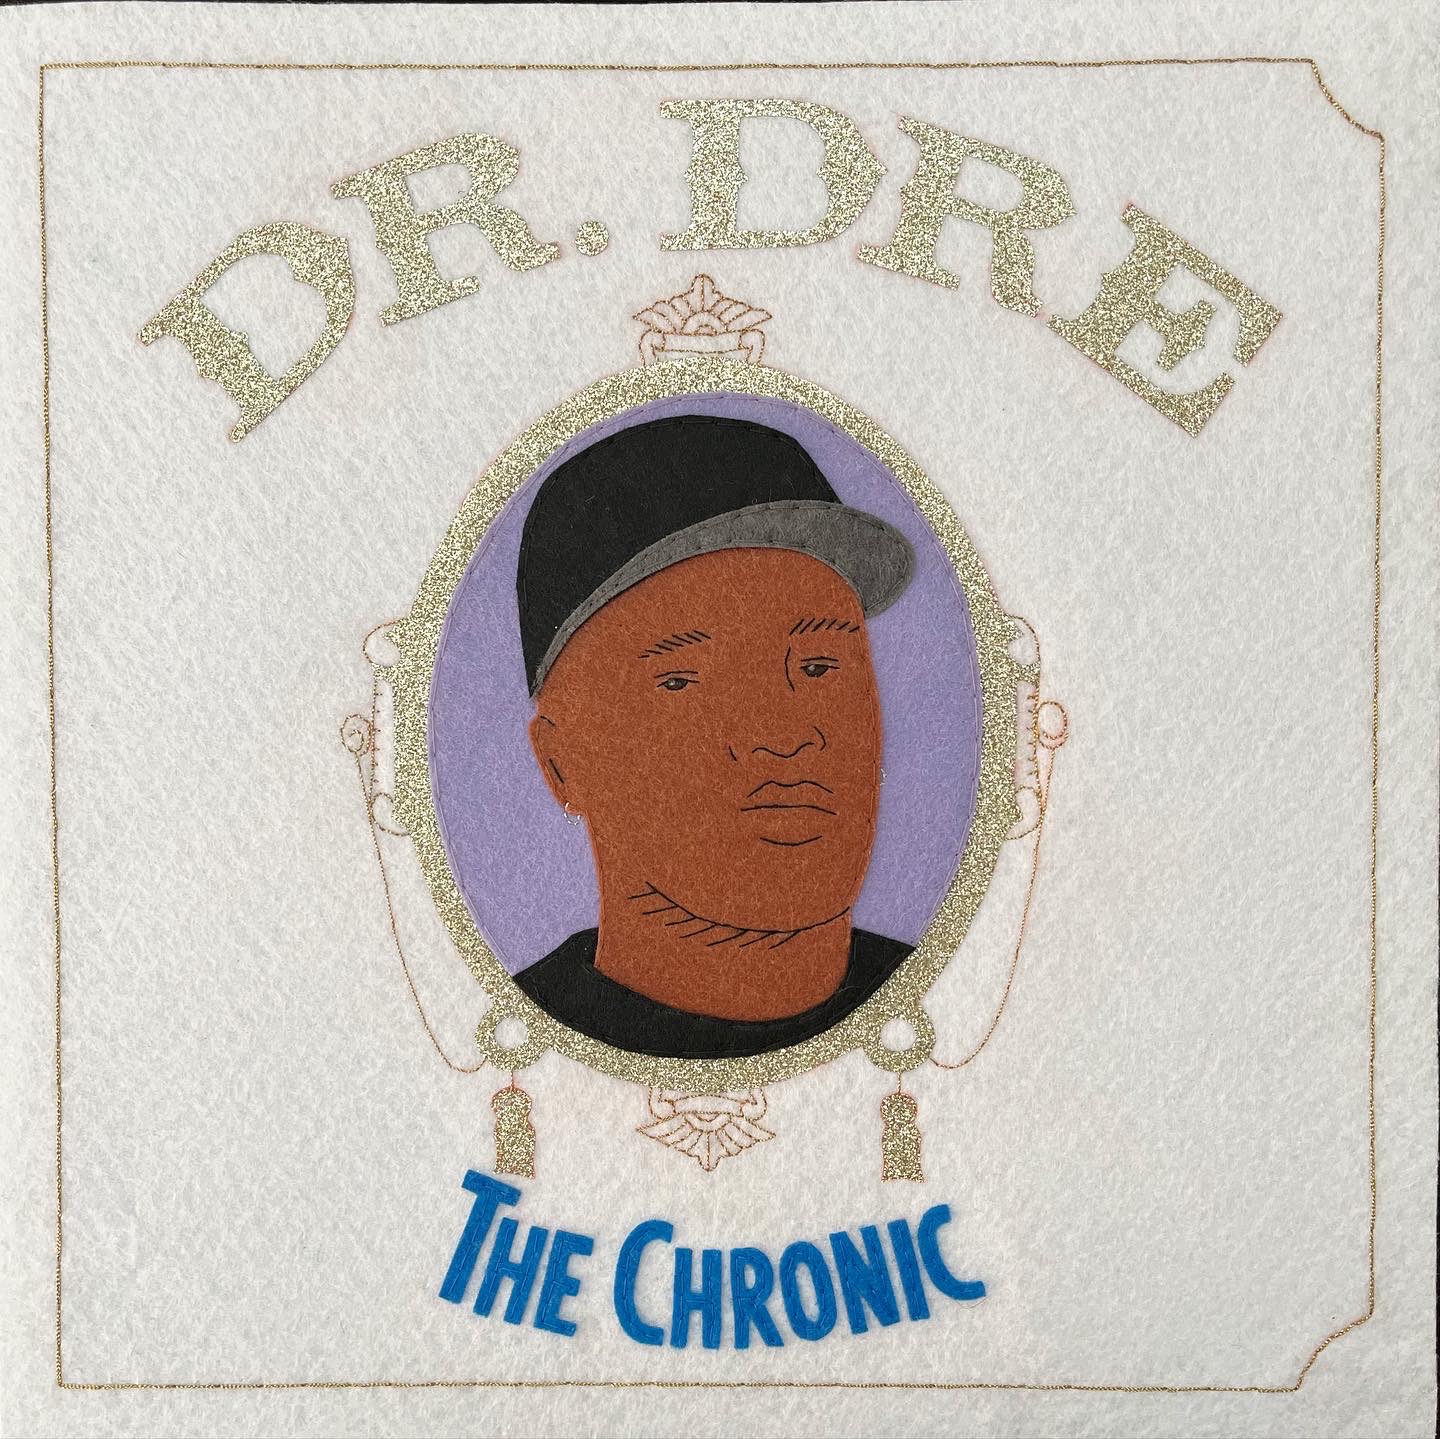 Dr Dre - The Chronic (1992)